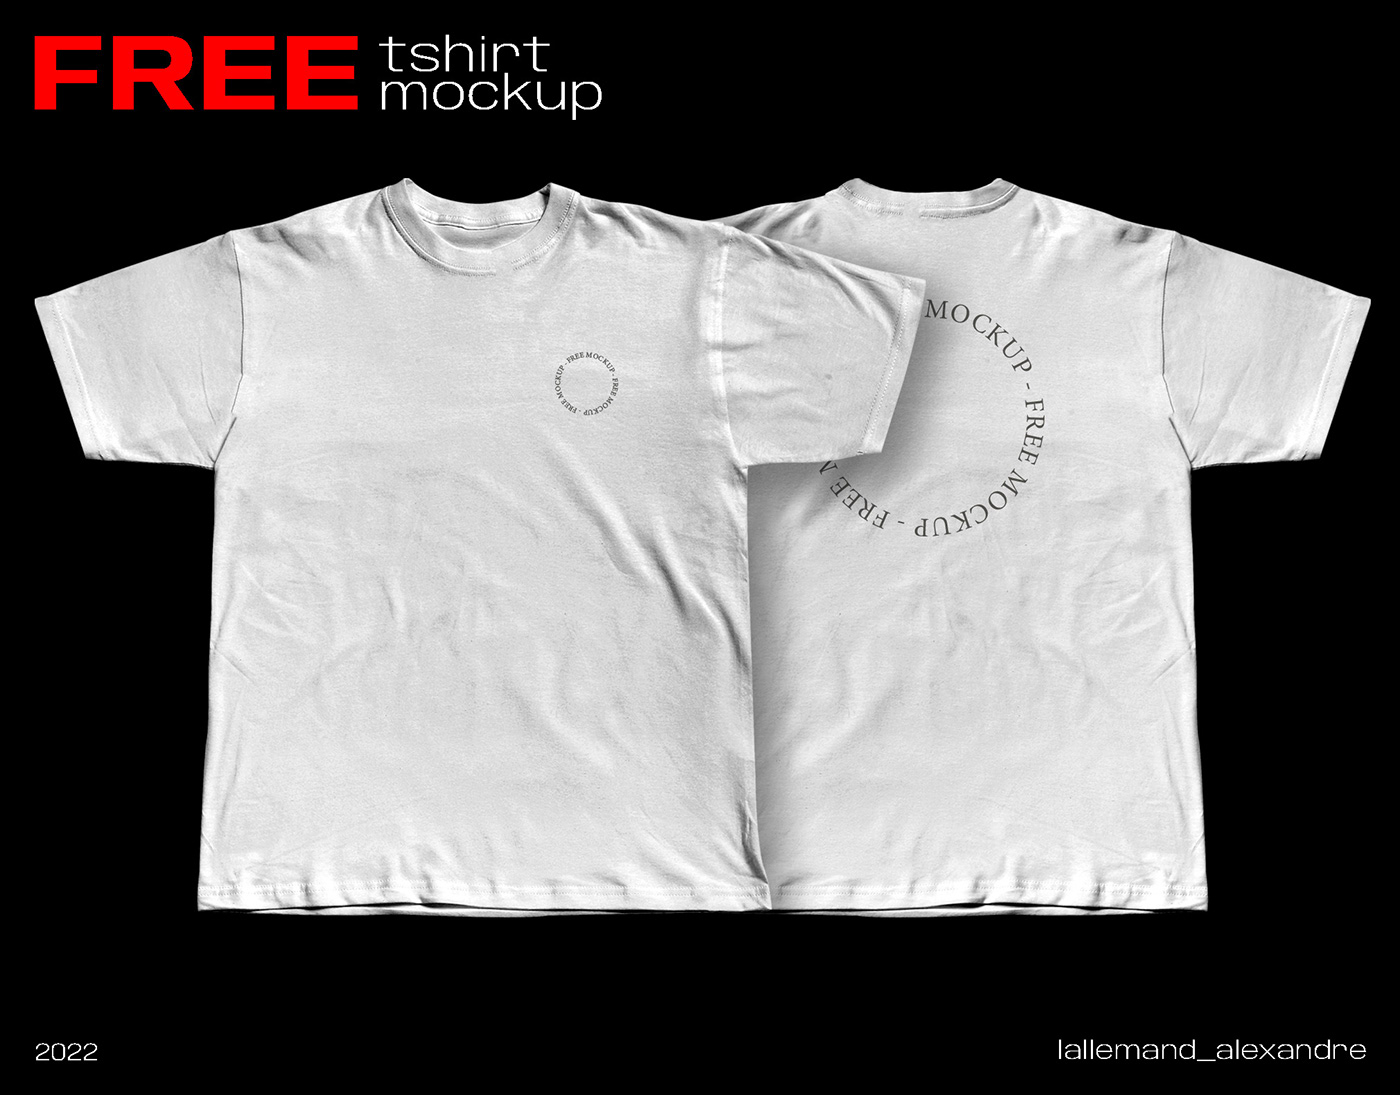 download free download free mockup  free tshirt mockup Mockup mockup psd psd template template tshirt tshirt mockup